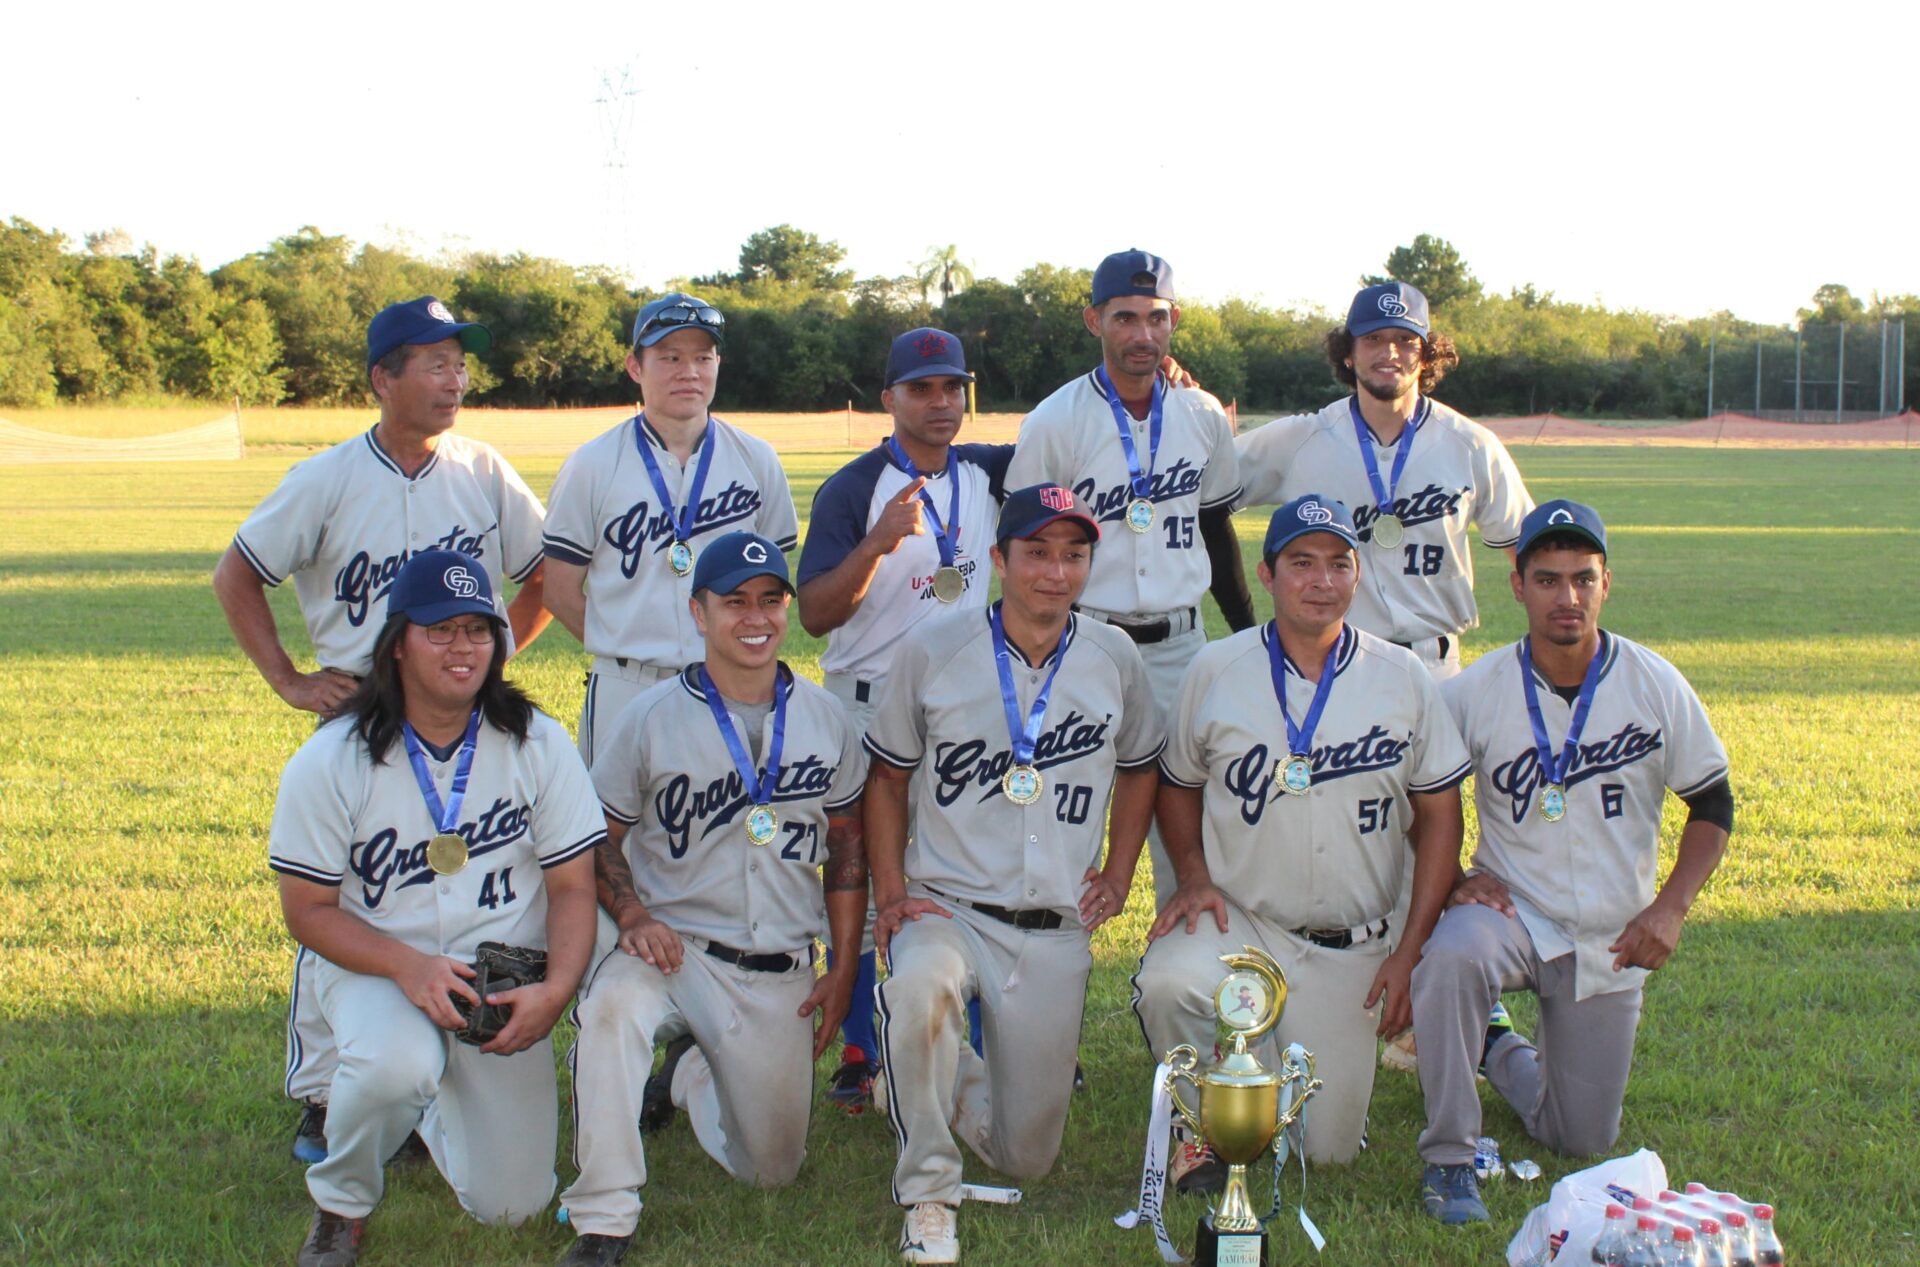 Equipe de Gravataí conquista mais um título em campeonato de softbol